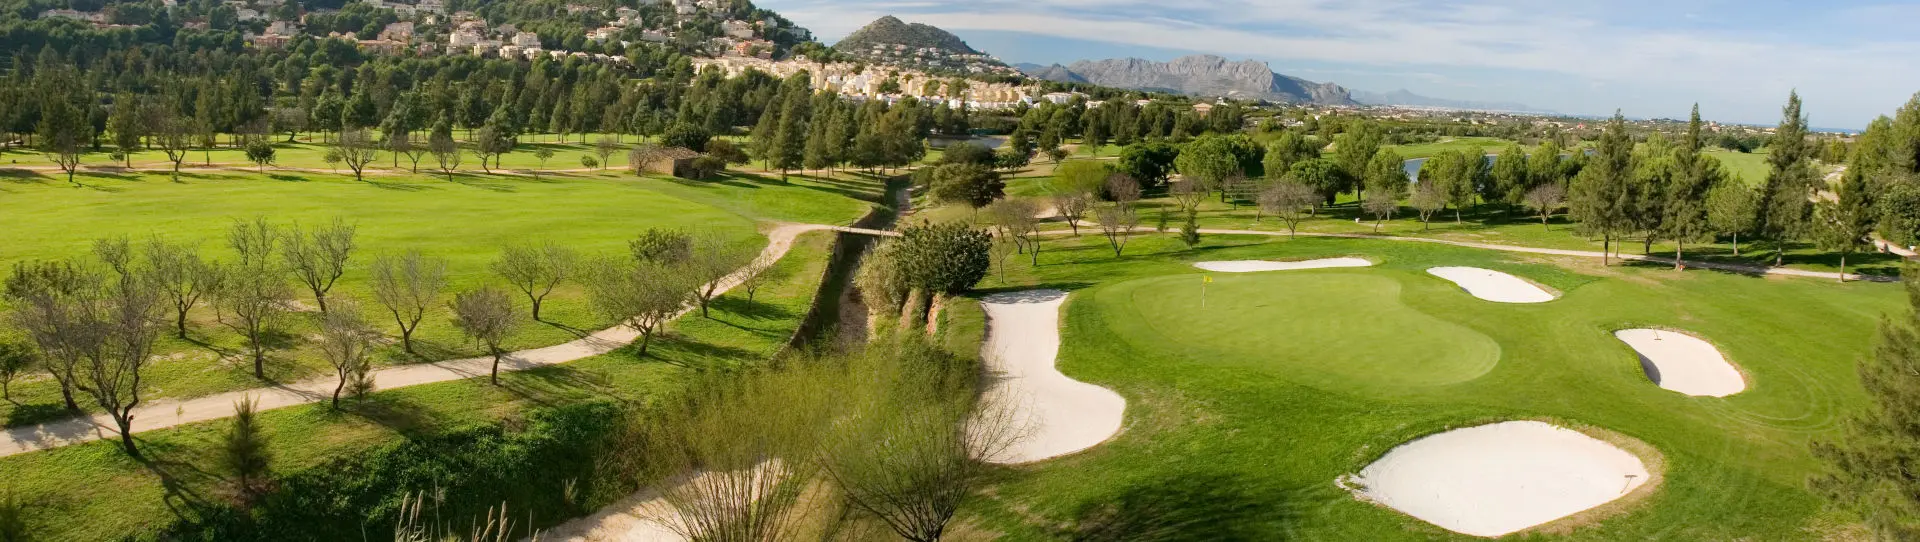 Spain golf courses - La Sella Golf Course - Photo 3